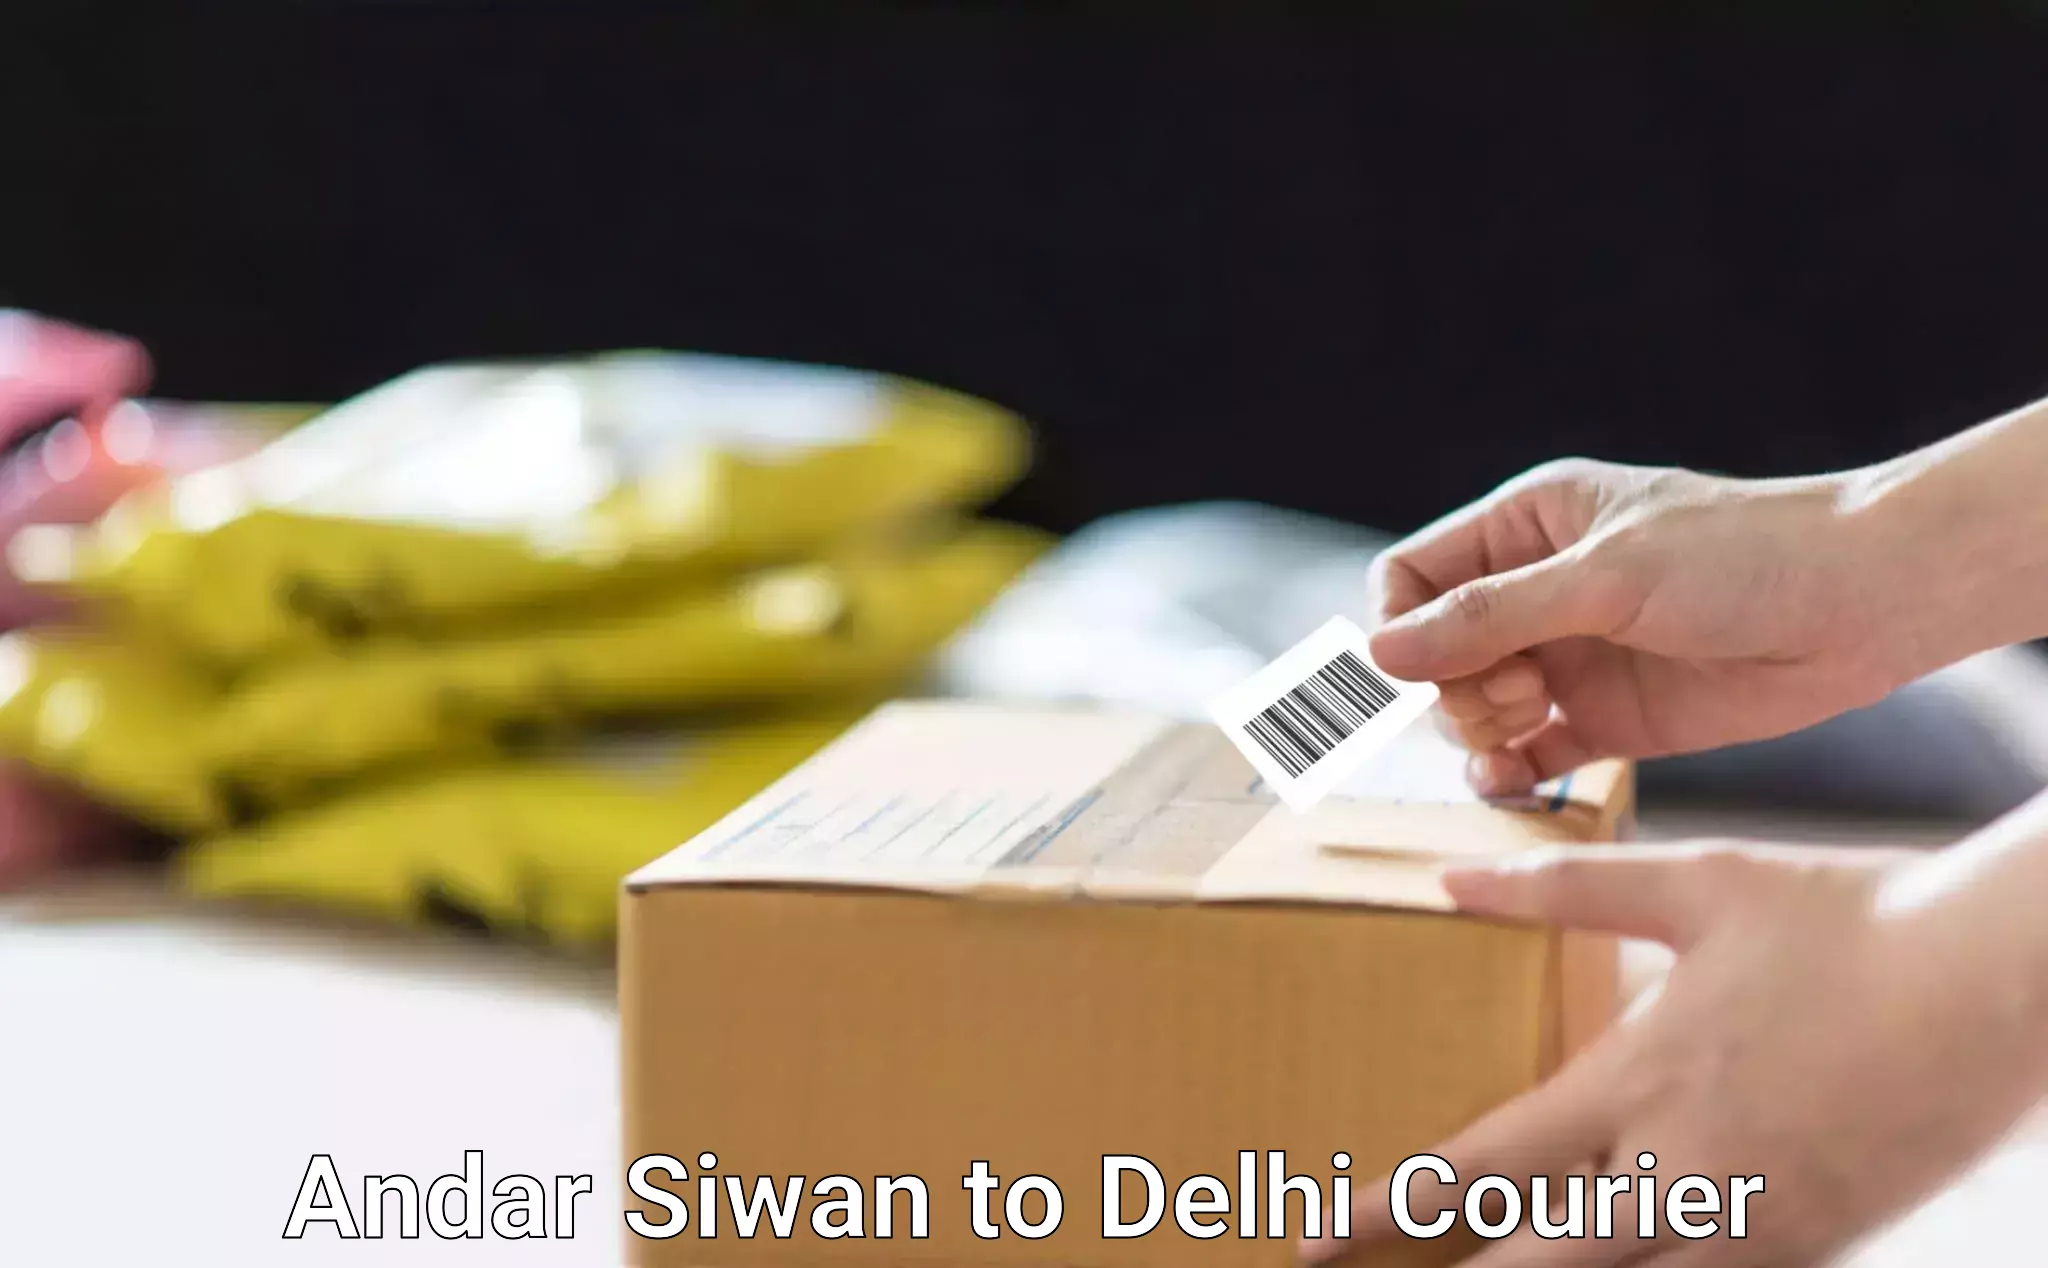 Door-to-door relocation services Andar Siwan to East Delhi